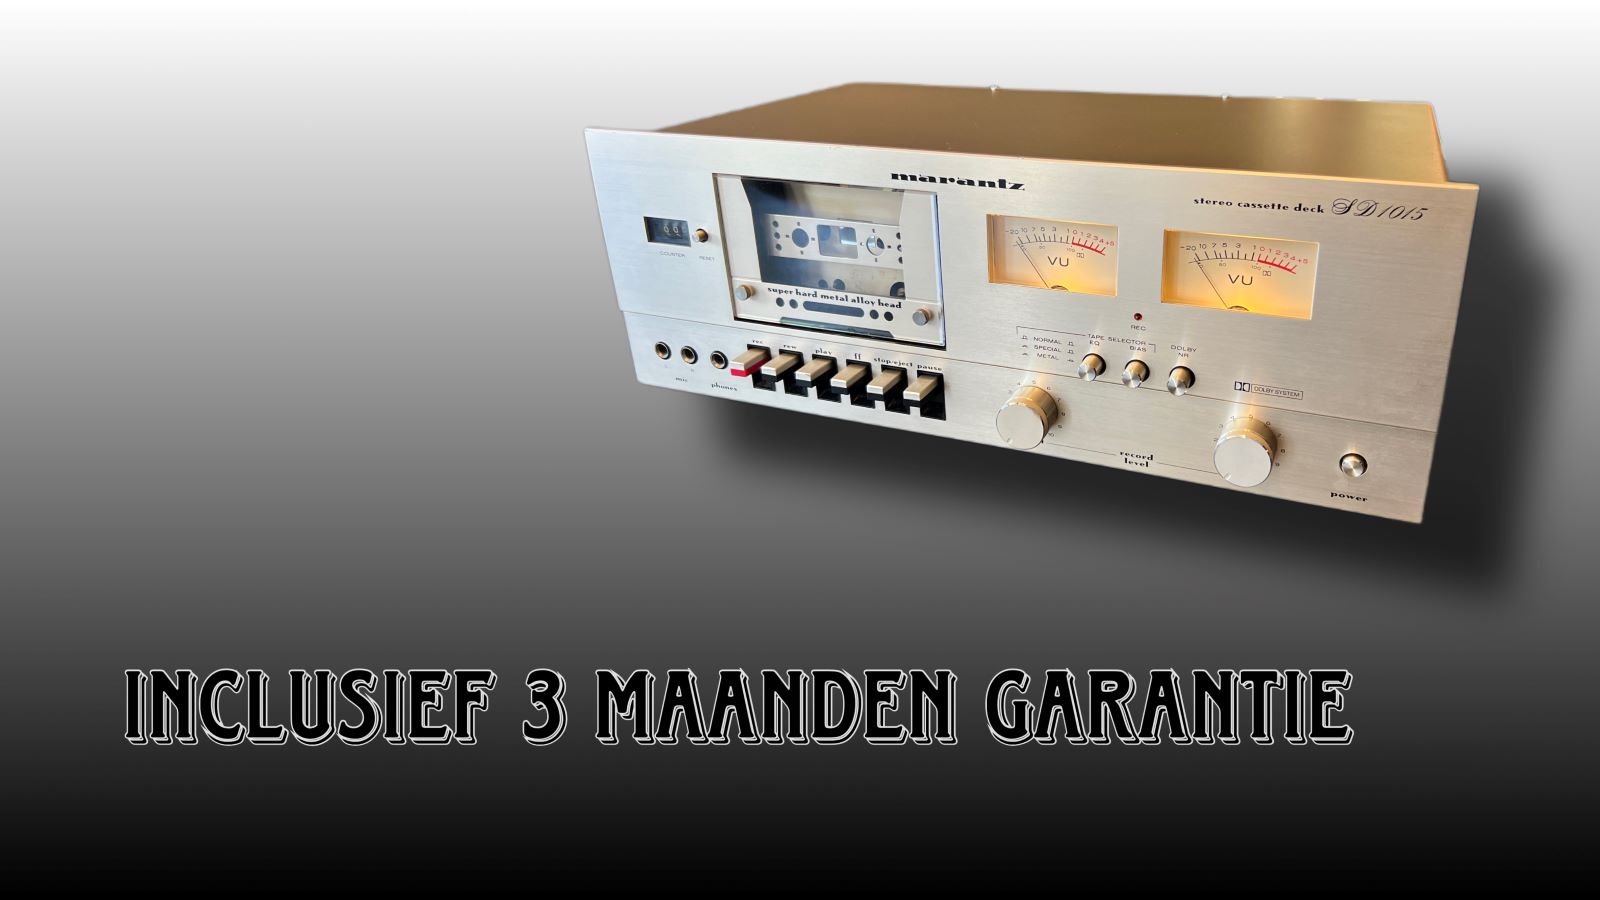 Marantz SD 1020 Cassettedeck mét garantie! 